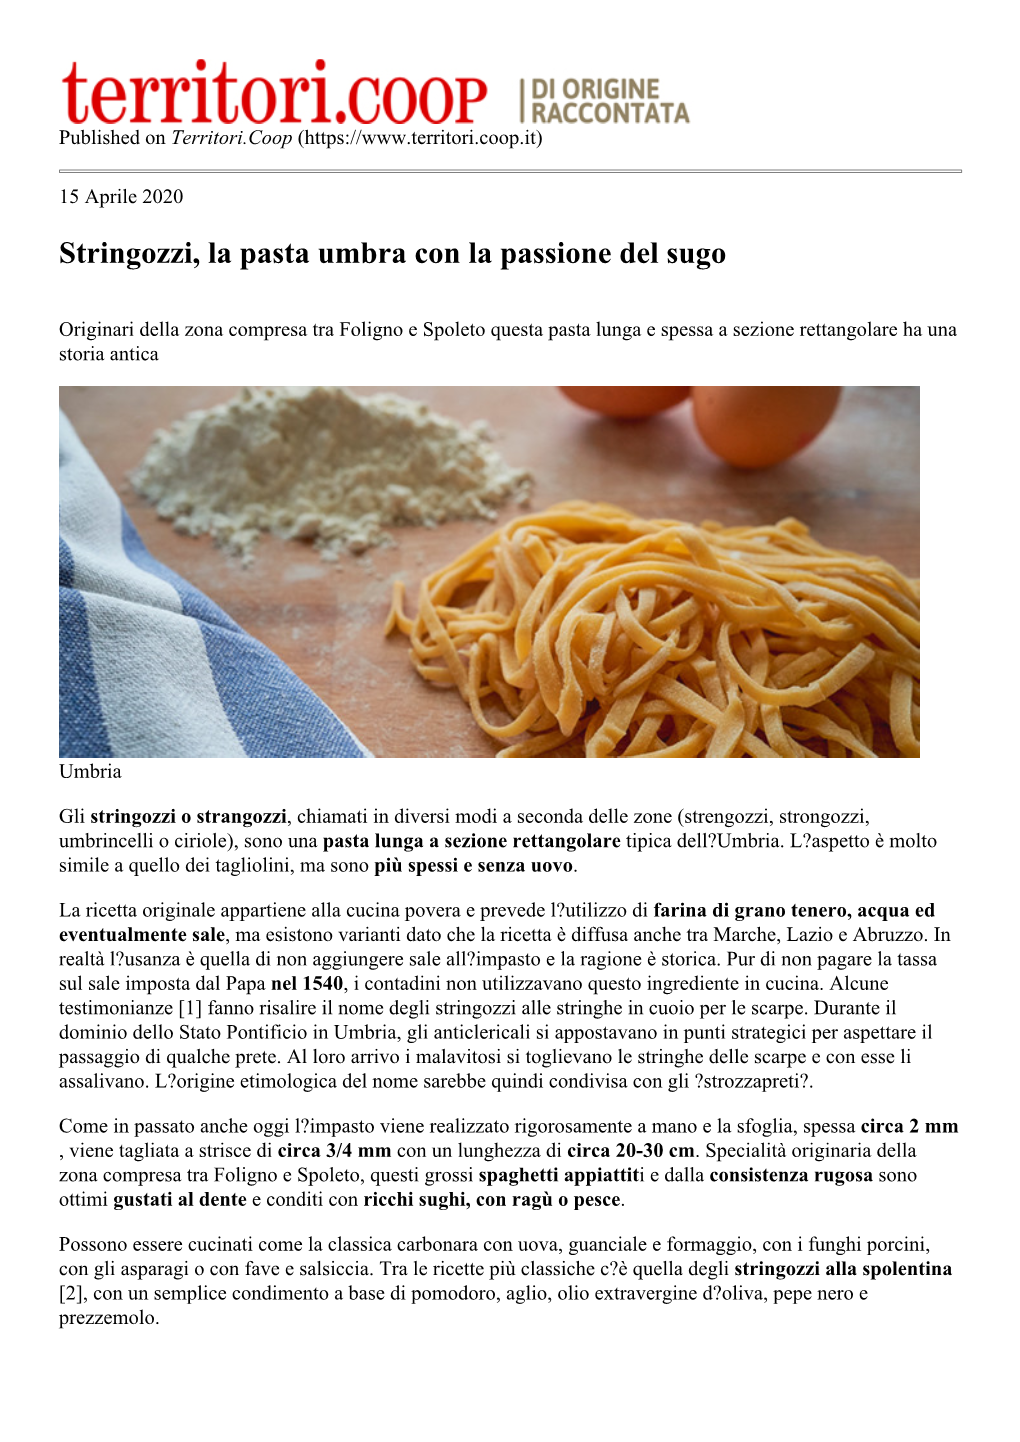 Stringozzi, La Pasta Umbra Con La Passione Del Sugo